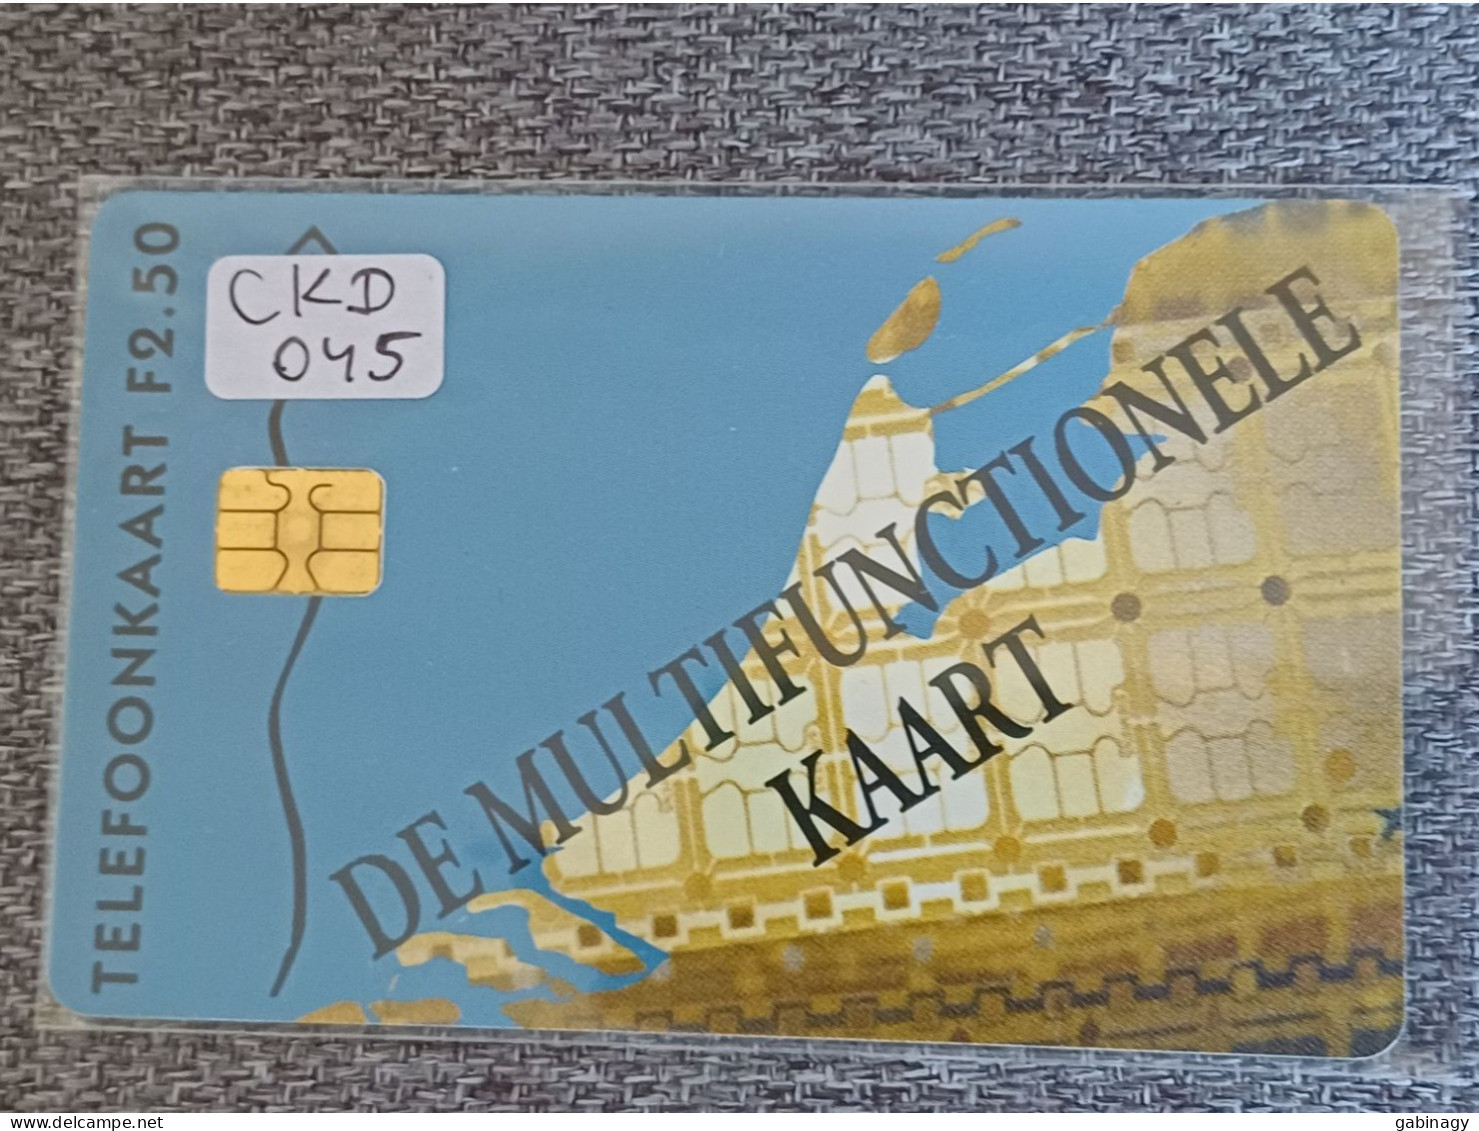 NETHERLANDS - CKD045 - National Chipcard Congress - 4.600EX. - Privé